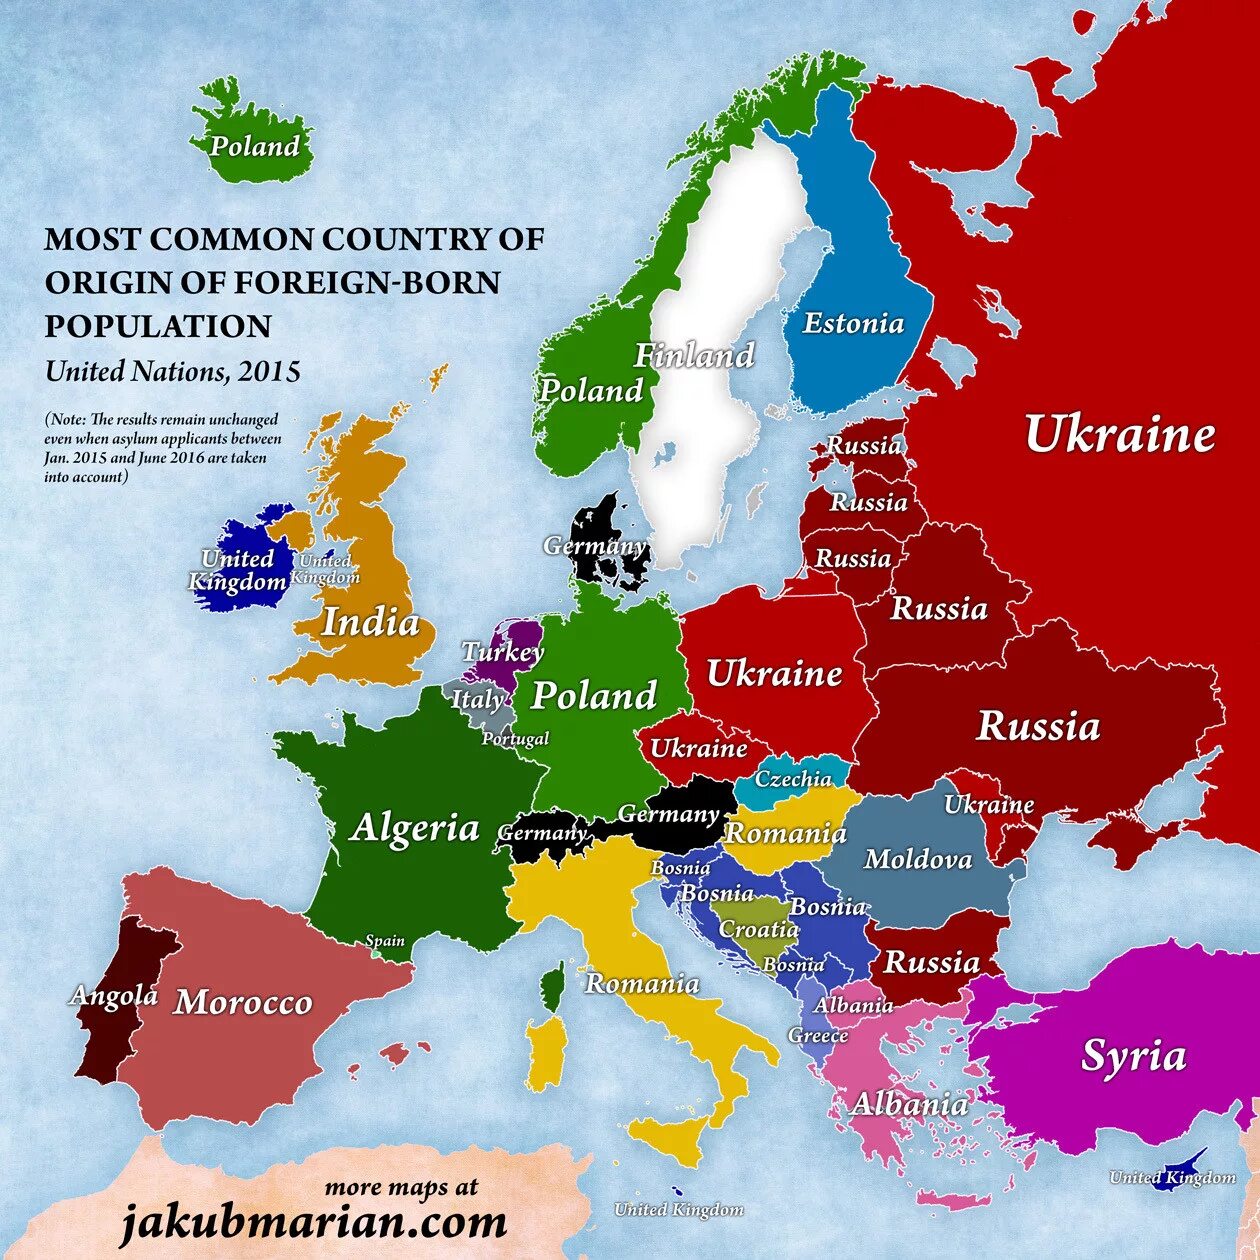 Most european countries. Карта - Европа. Страны Европы. Карта Европы со странами. Интересные карты Европы.